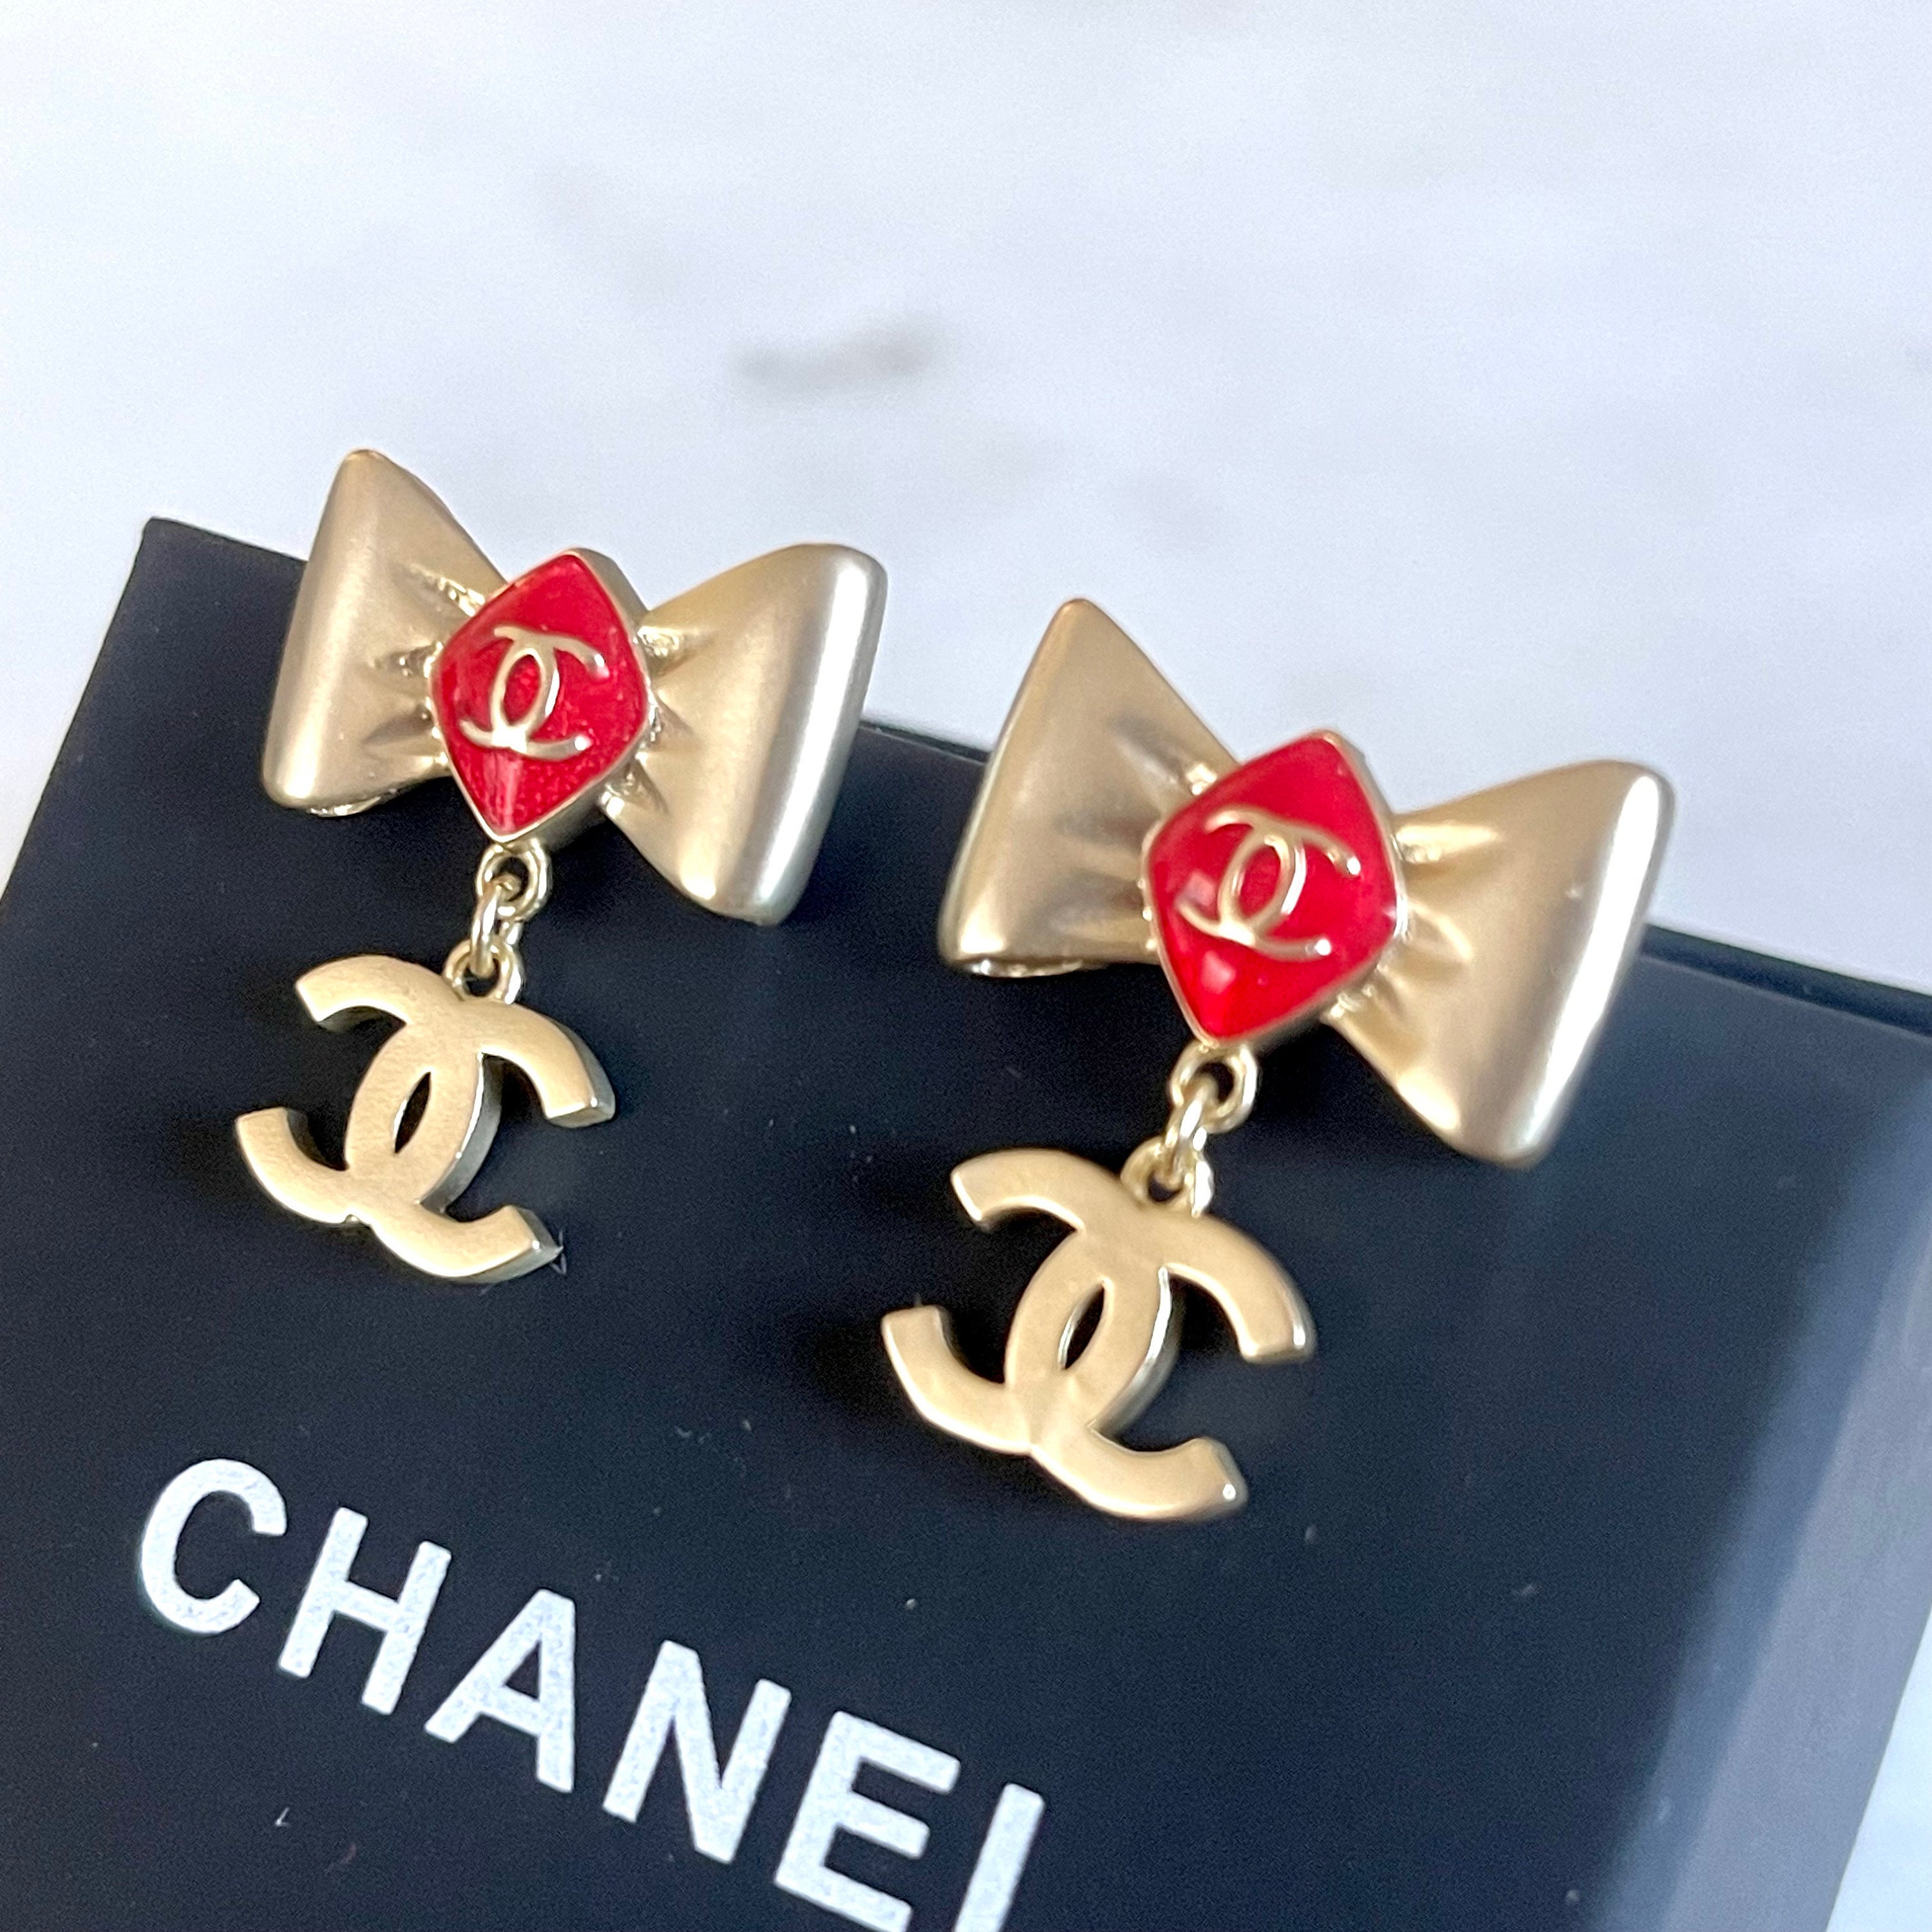 Cheap Chanel Earrings OnSale, Discount Chanel Earrings Free Shipping!